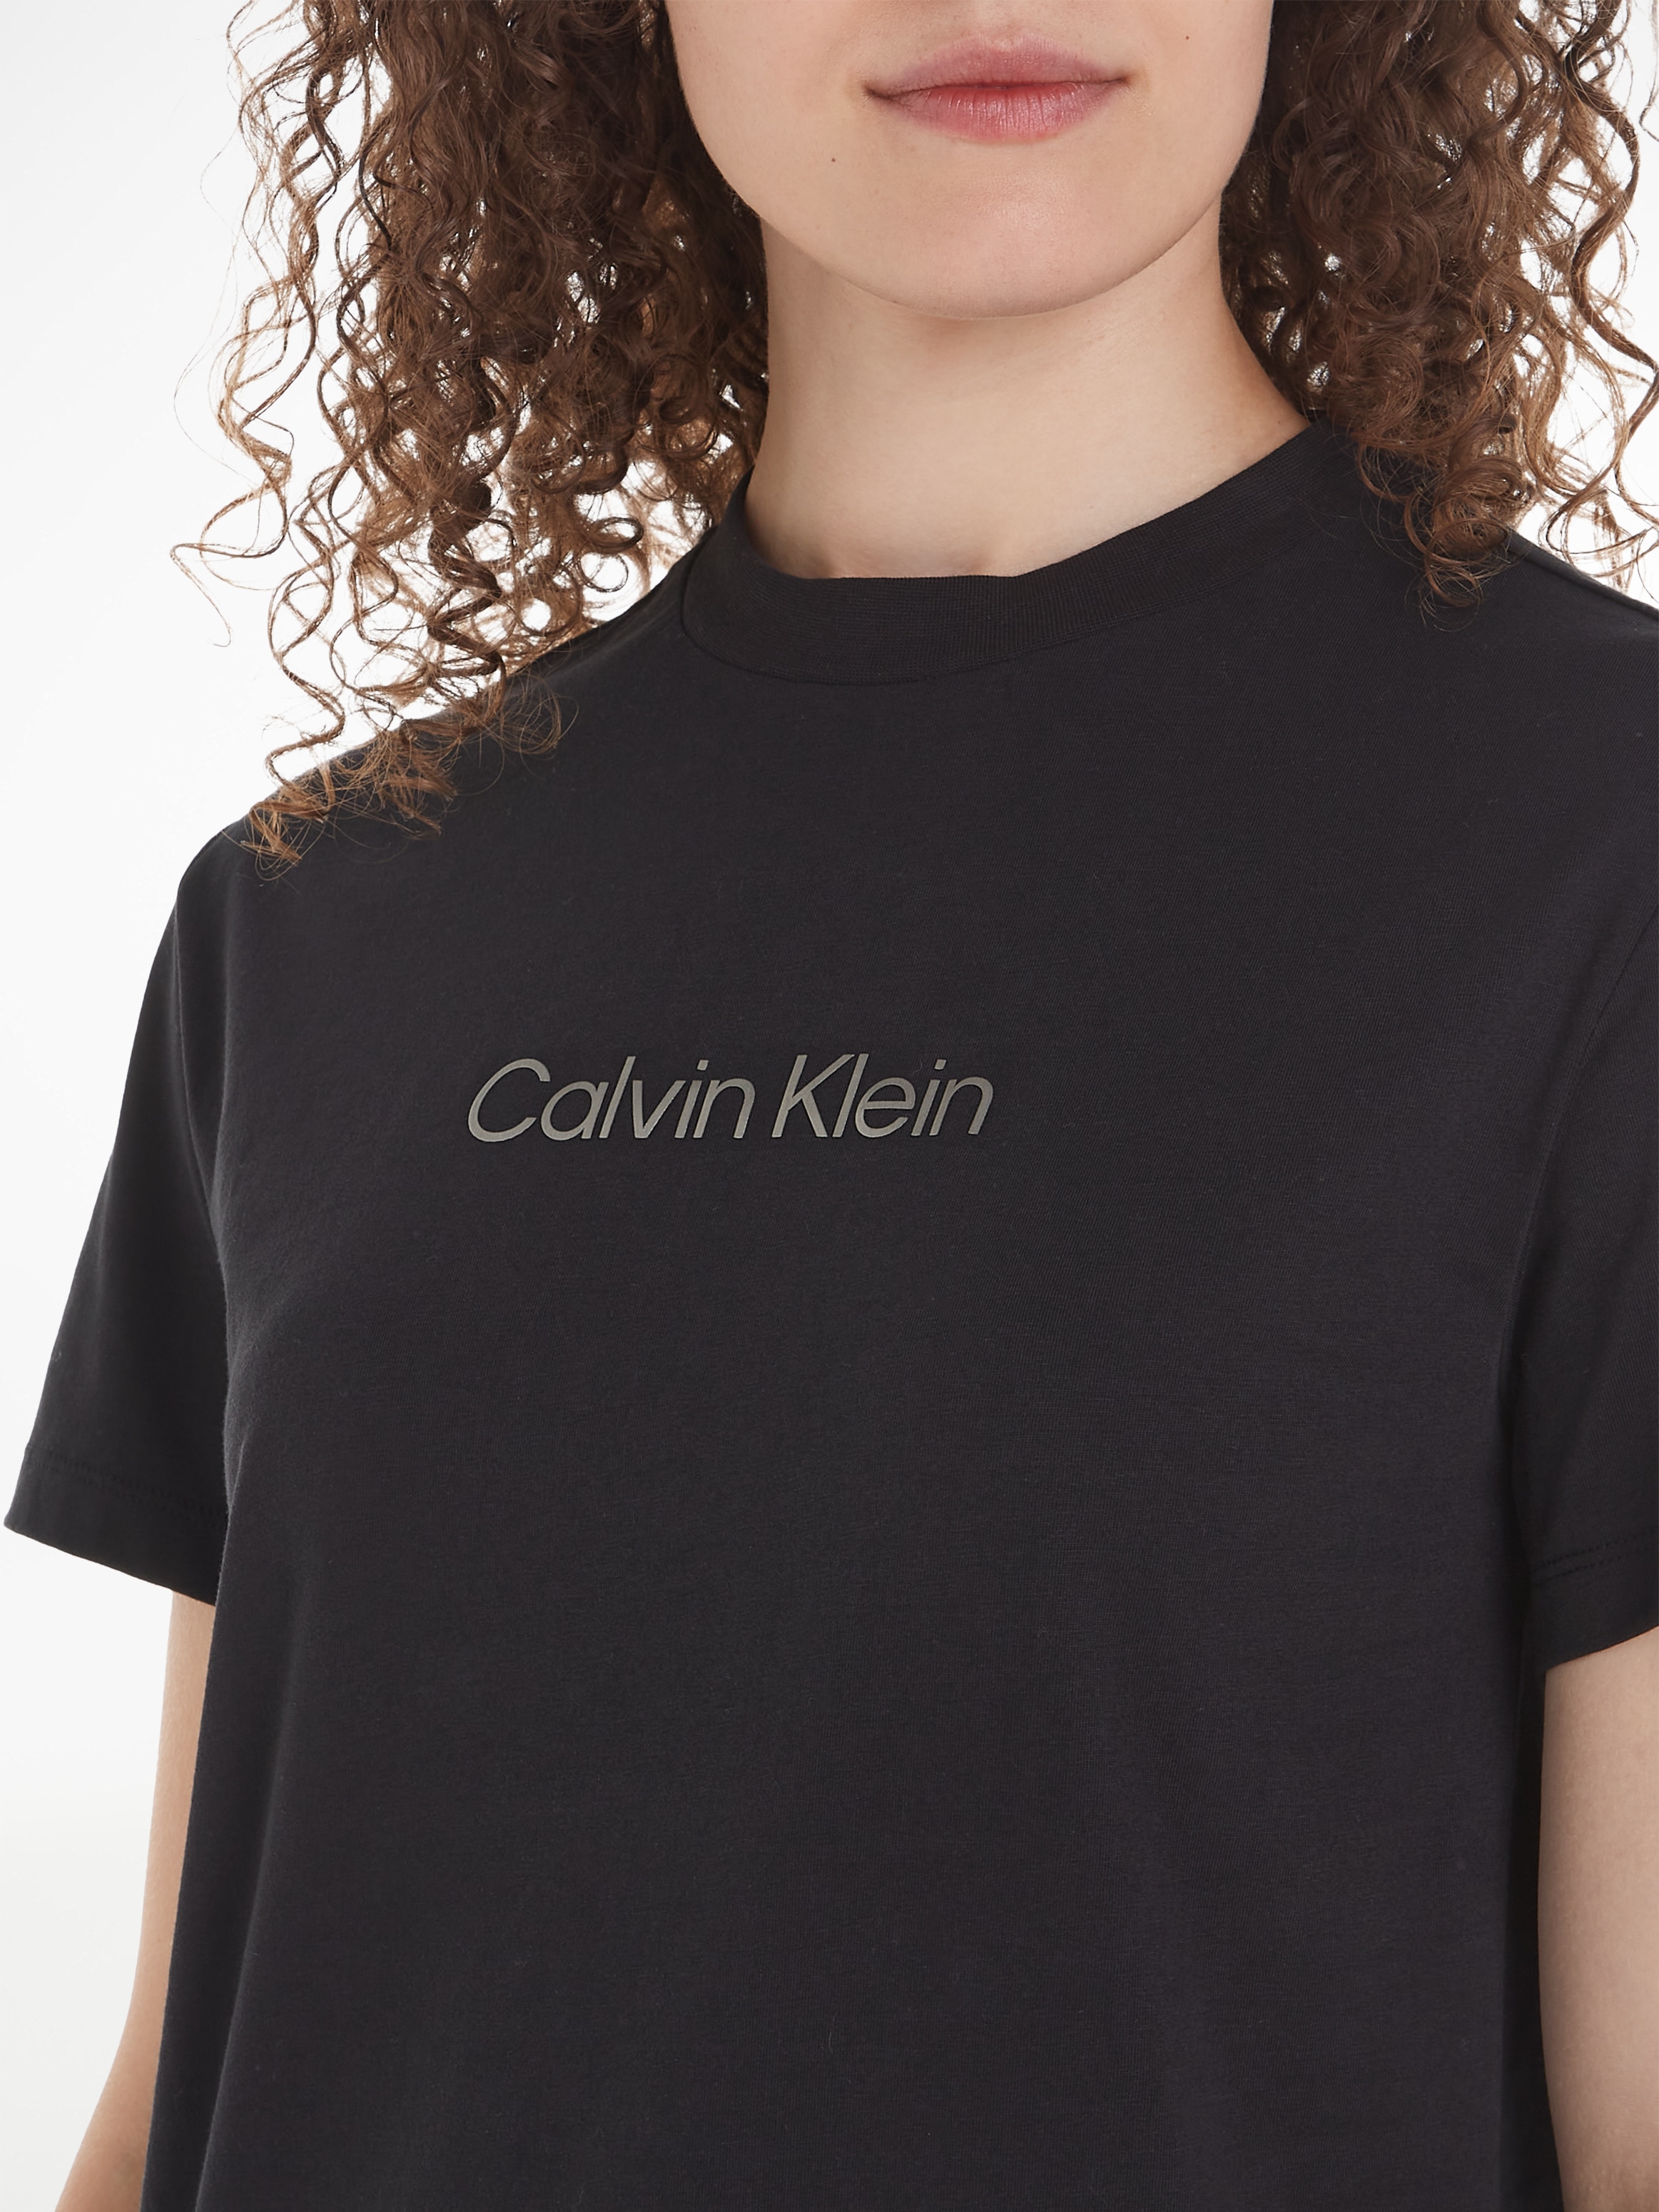 Klein Brust der bei Calvin Calvin online T-SHIRT«, Print Klein OTTO »HERO T-Shirt auf METALLIC LOGO mit